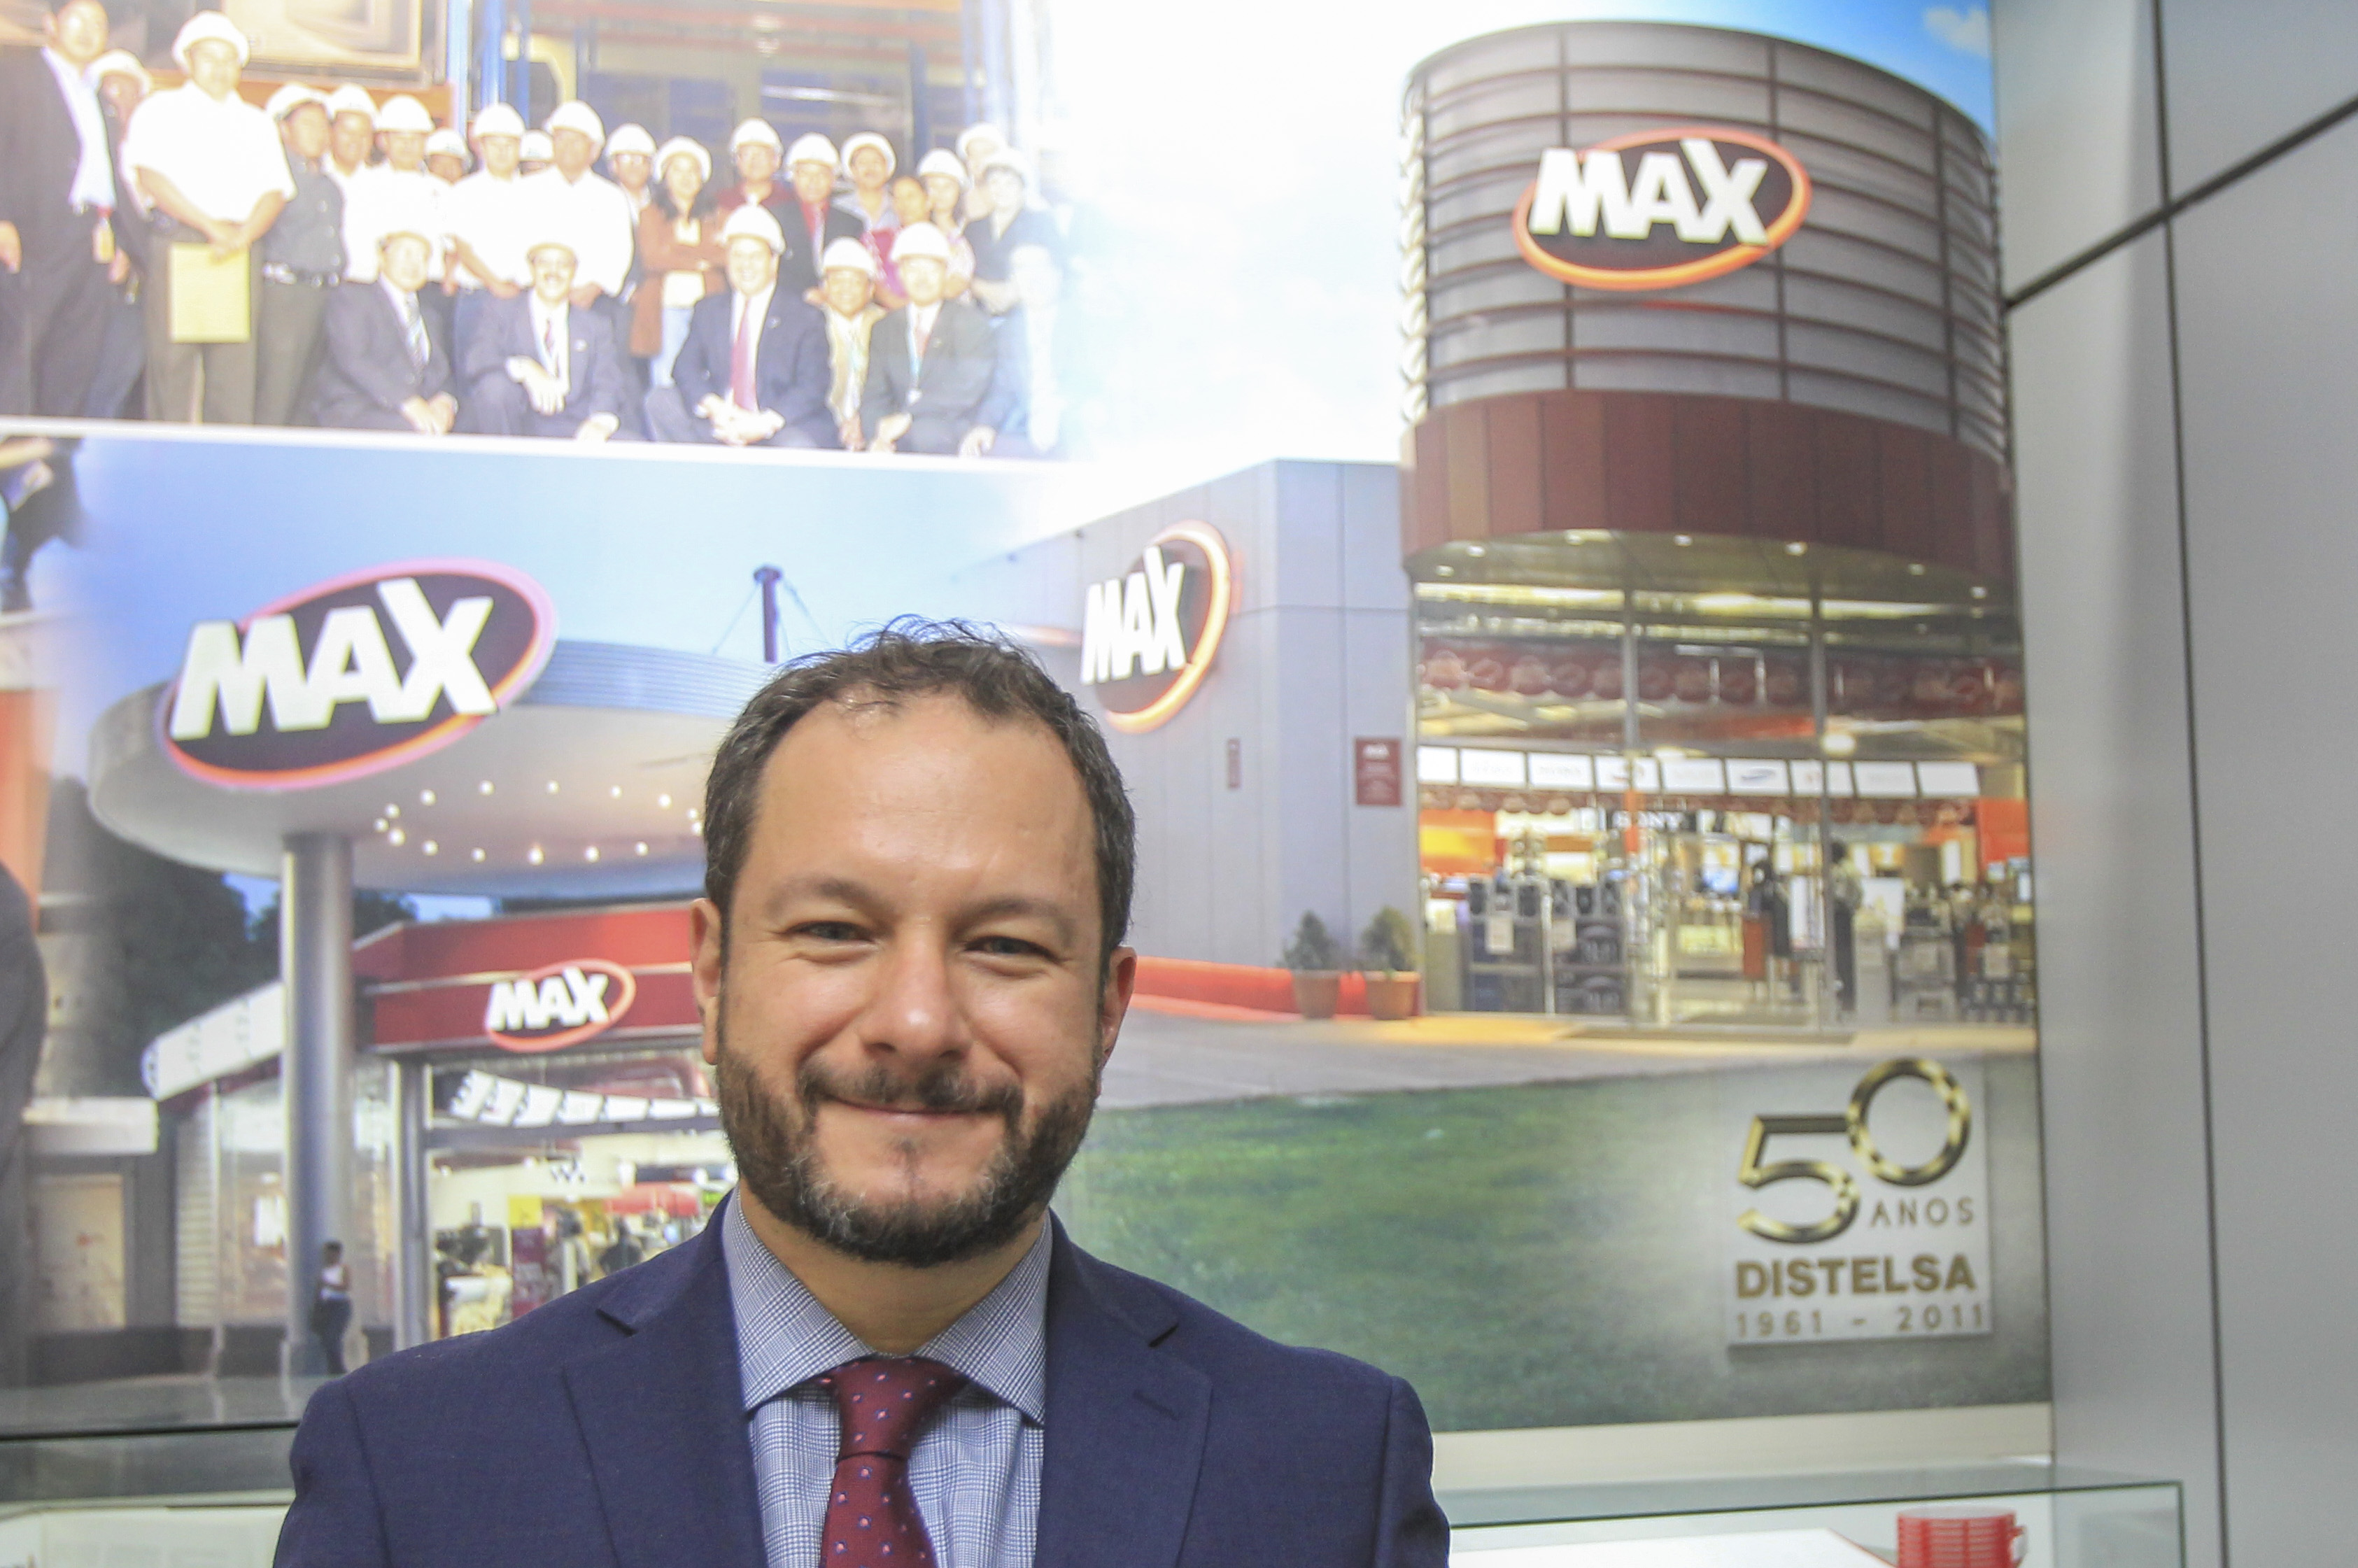 Martín Prera director de mercadeo dio a conocer los beneficios que ofrece Tiendas Max para sus clientes. Foto Prensa Libre: Norvin Mendoza